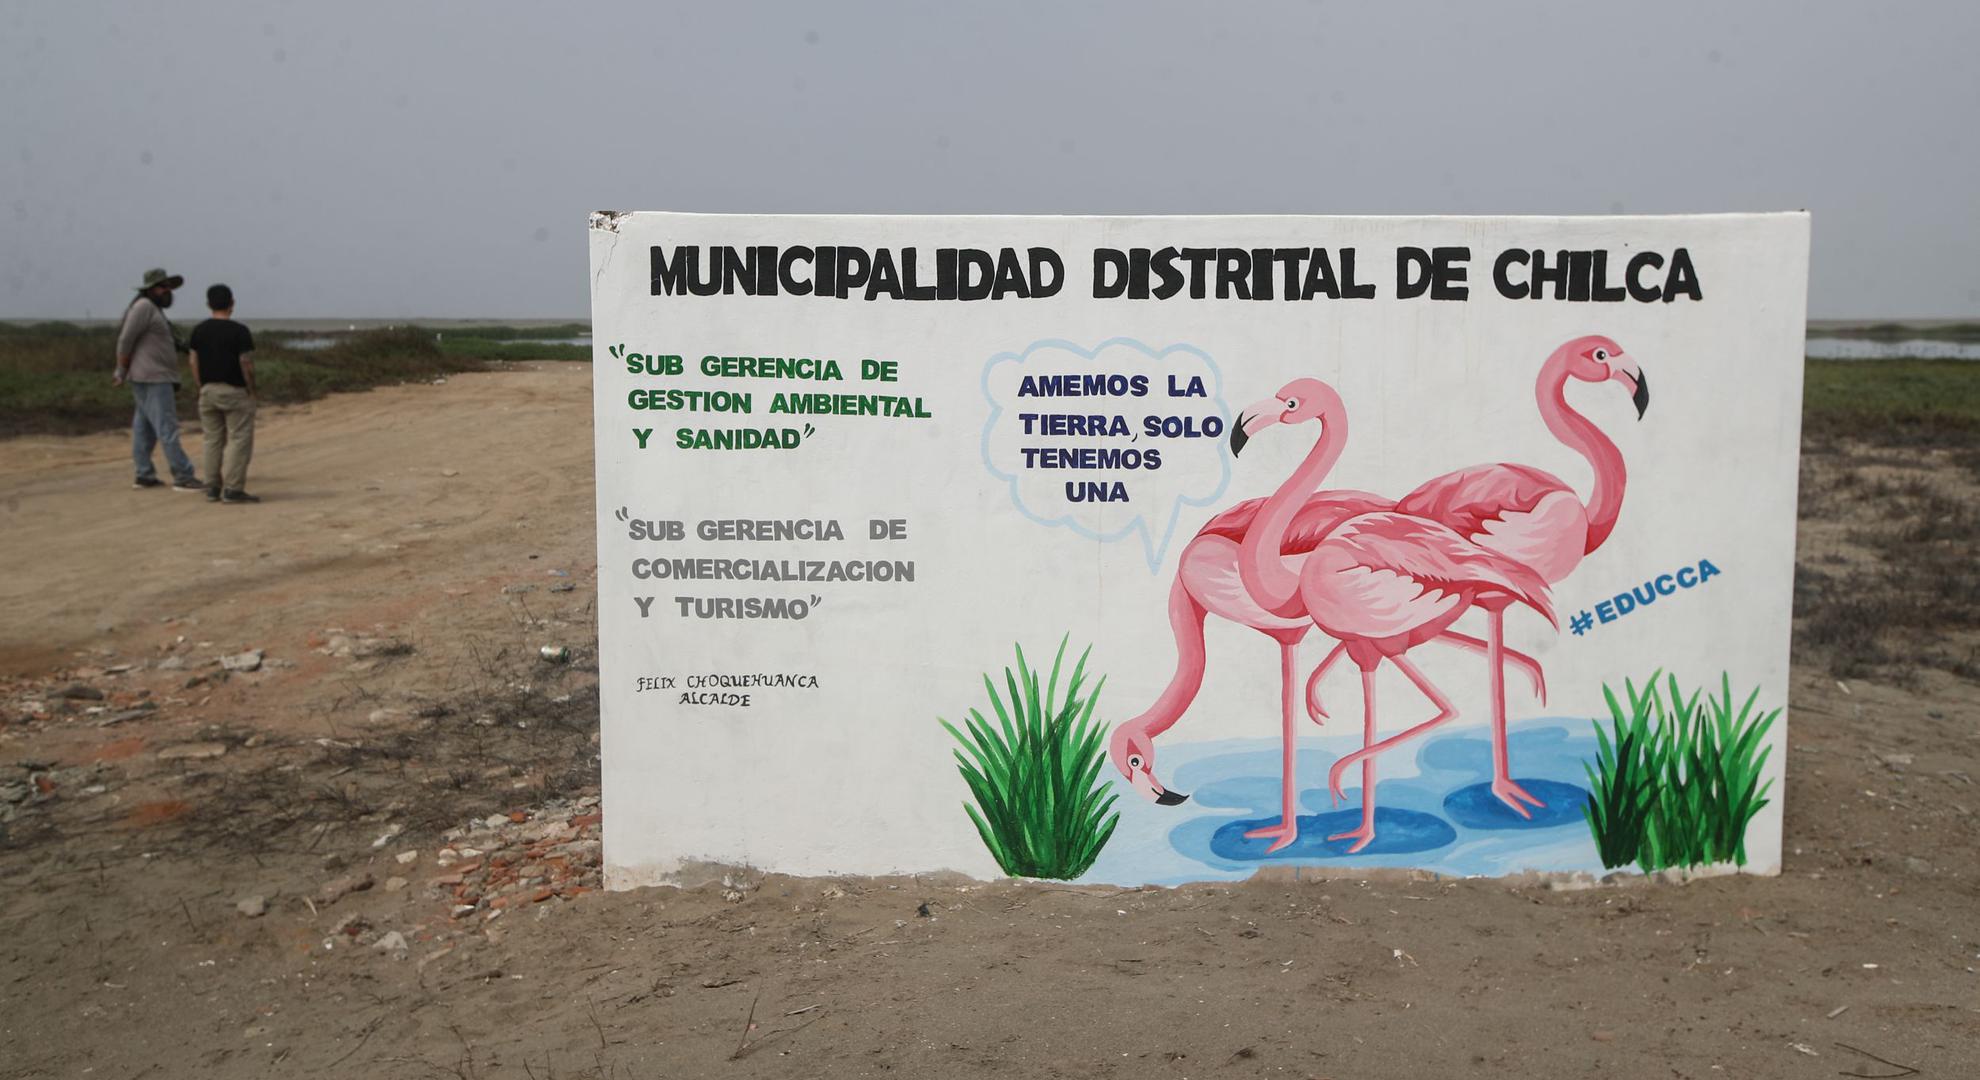 En la zona del humedal, el municipio de Chilca “viene realizando trabajos de limpieza y sensibilización” para evitar que los vecinos arrojen desperdicios y dañen el ecosistema.